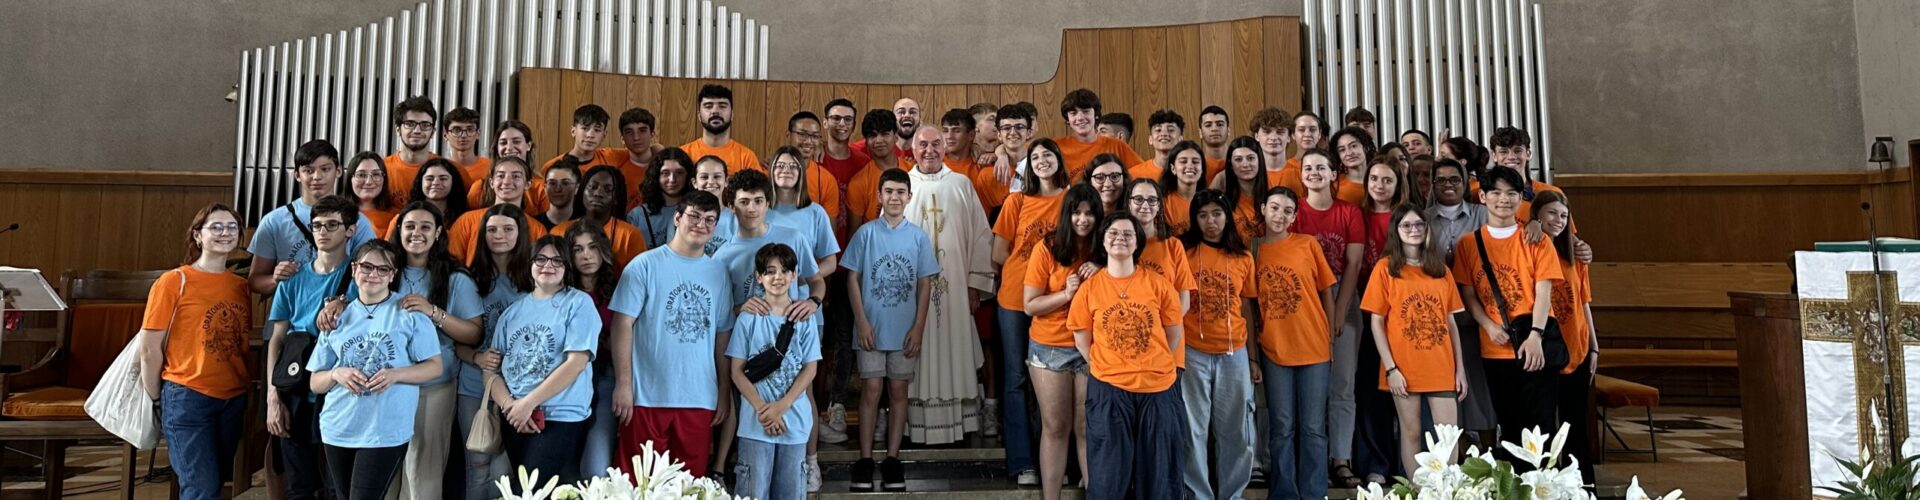 Giubileo della misericordia nella diocesi di Torino